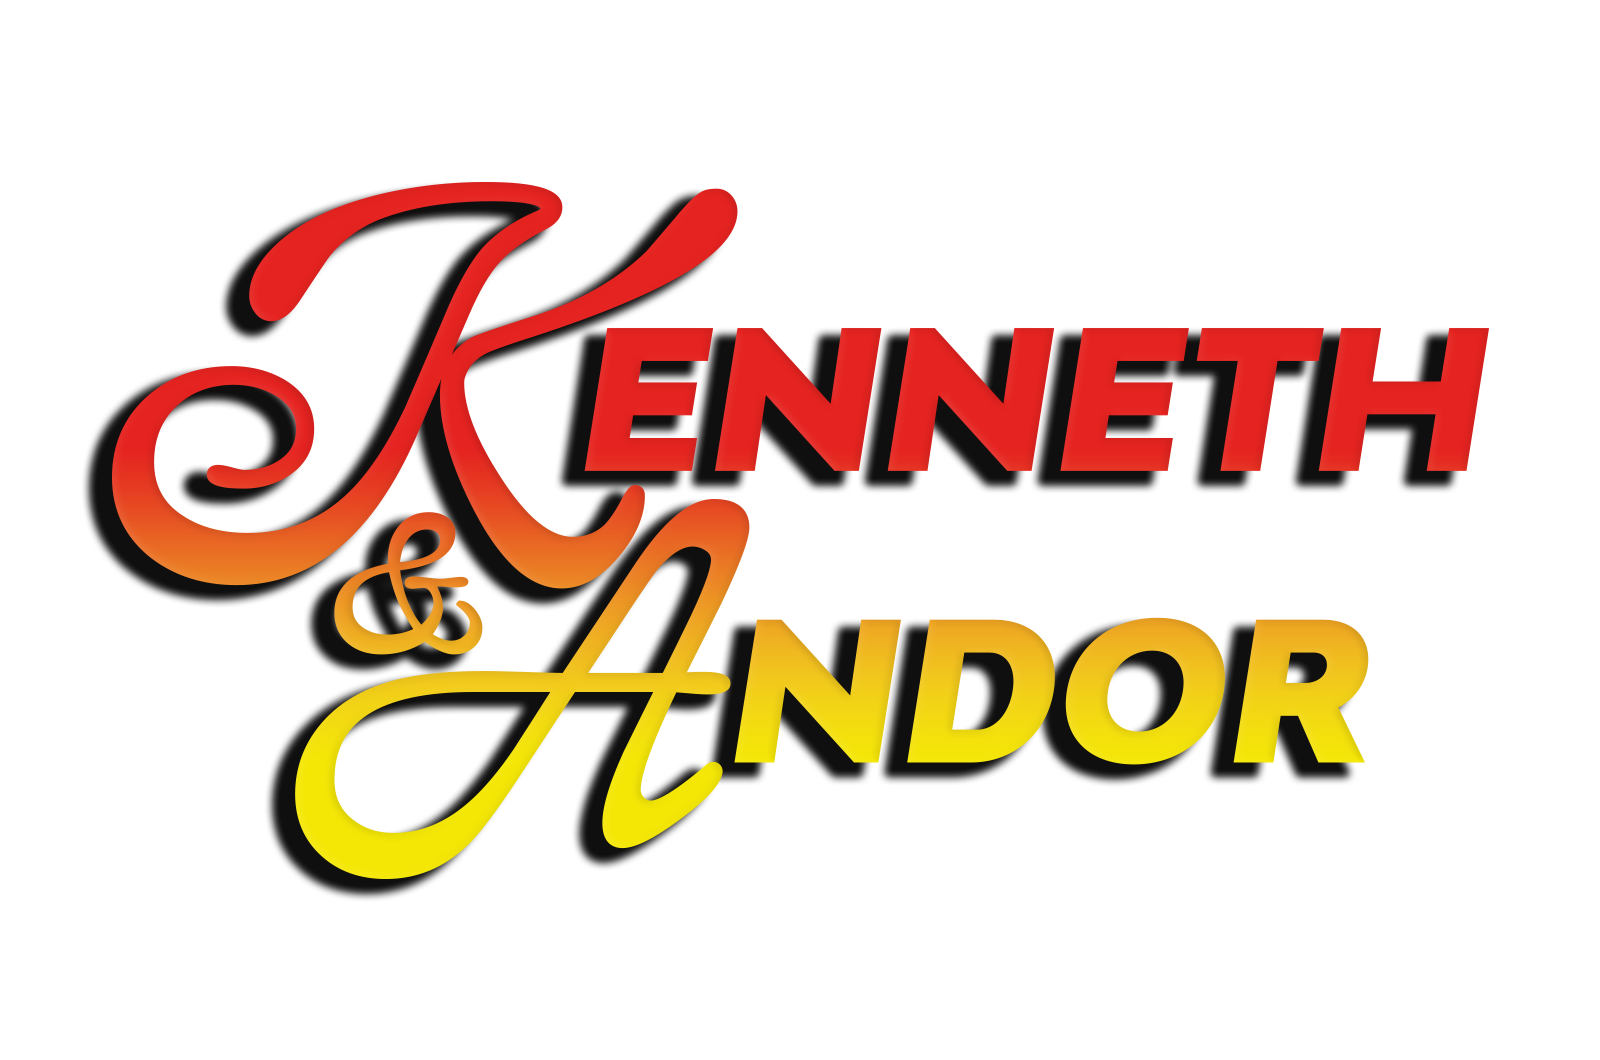 Entertainment | Concepten | Sfeermakers - Het legendarische enterainment duo Kenneth en Andor.